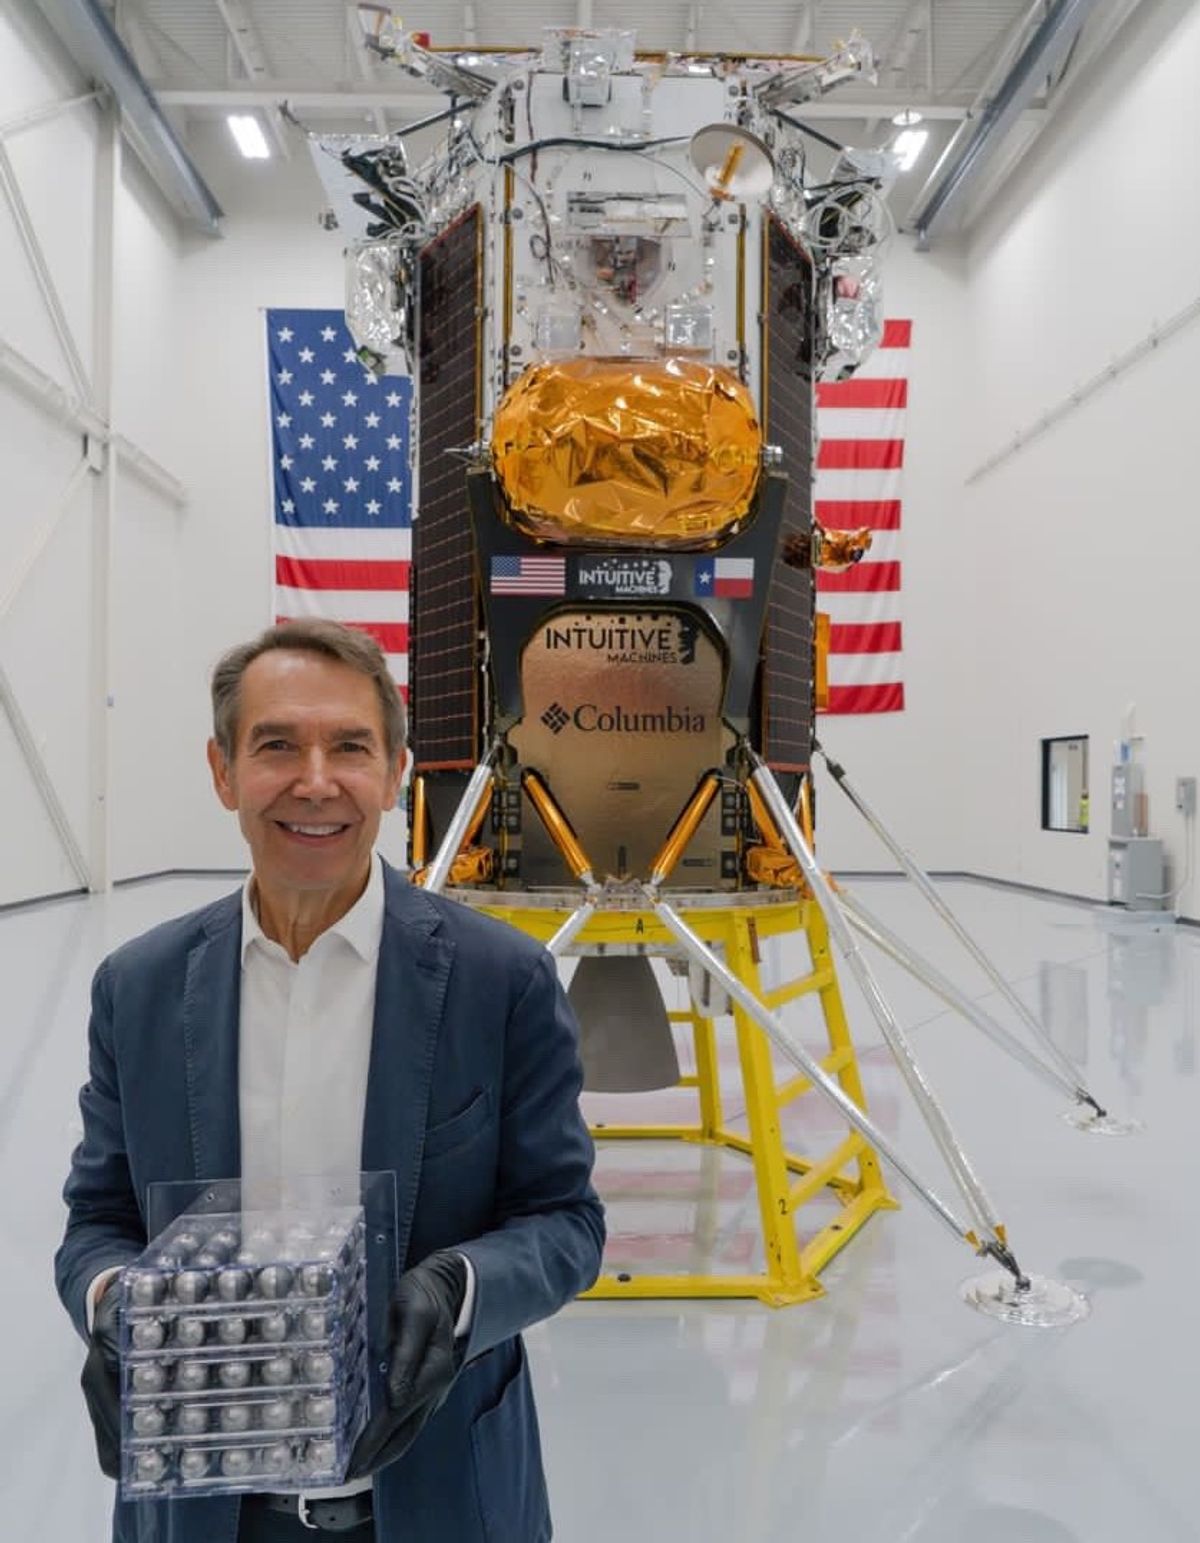 Koons'un heykelleri, özel Amerikan şirketi Intuitive Machines tarafından geliştirilen ve Musk'ın SpaceX'i tarafından tasarlanan Falcon 9 roketiyle Ay'a fırlatılması planlanan Nova C (Odysseus) adlı iniş aracında yer alıyor.

Fotoğraf: Jeff Koons'un X paylaşımı. 